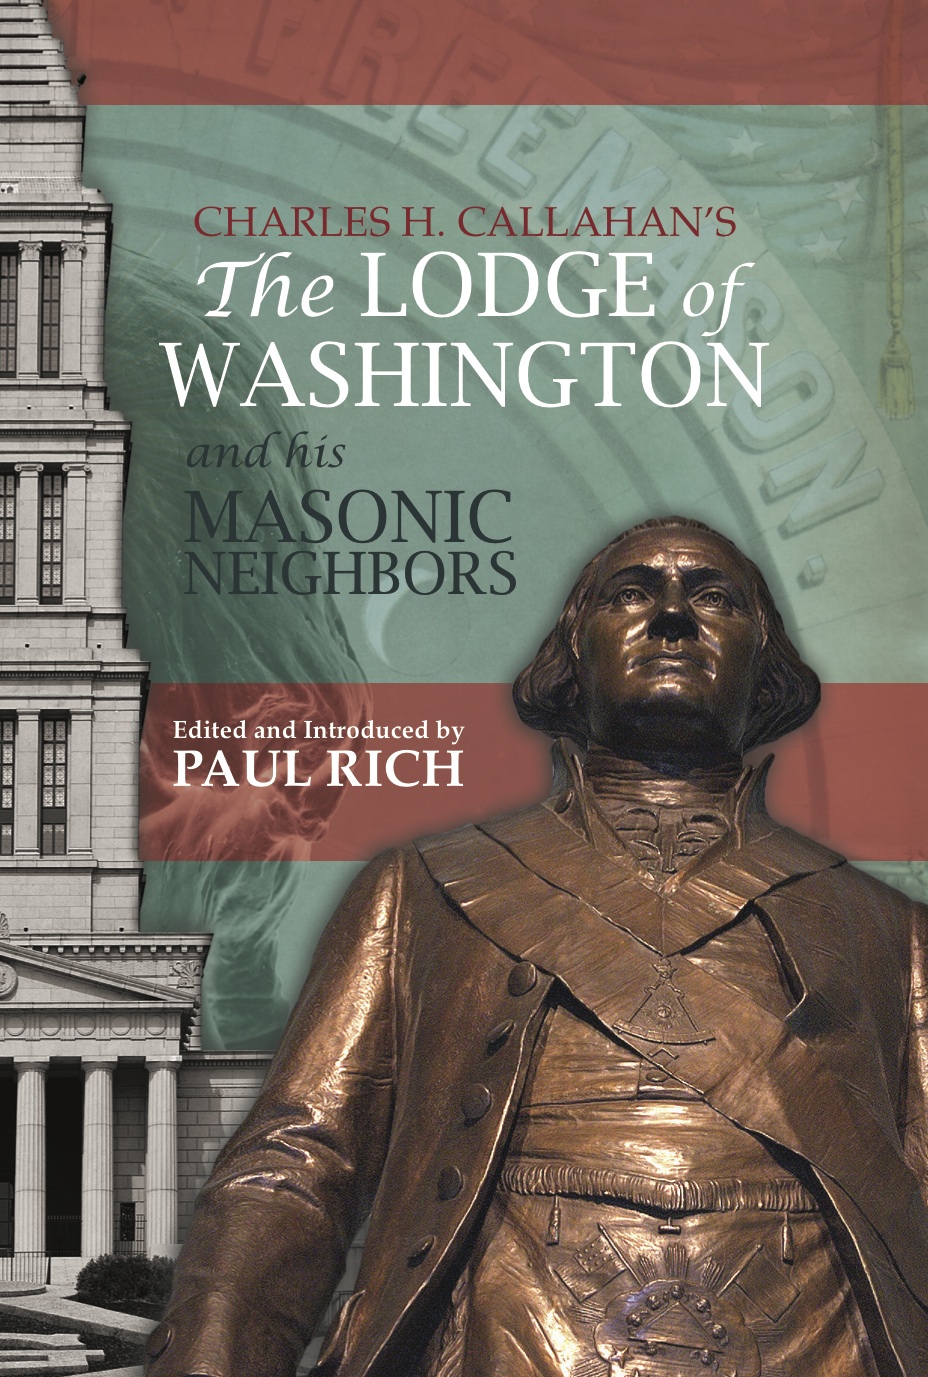 The Lodge of Washington and His Neighbors